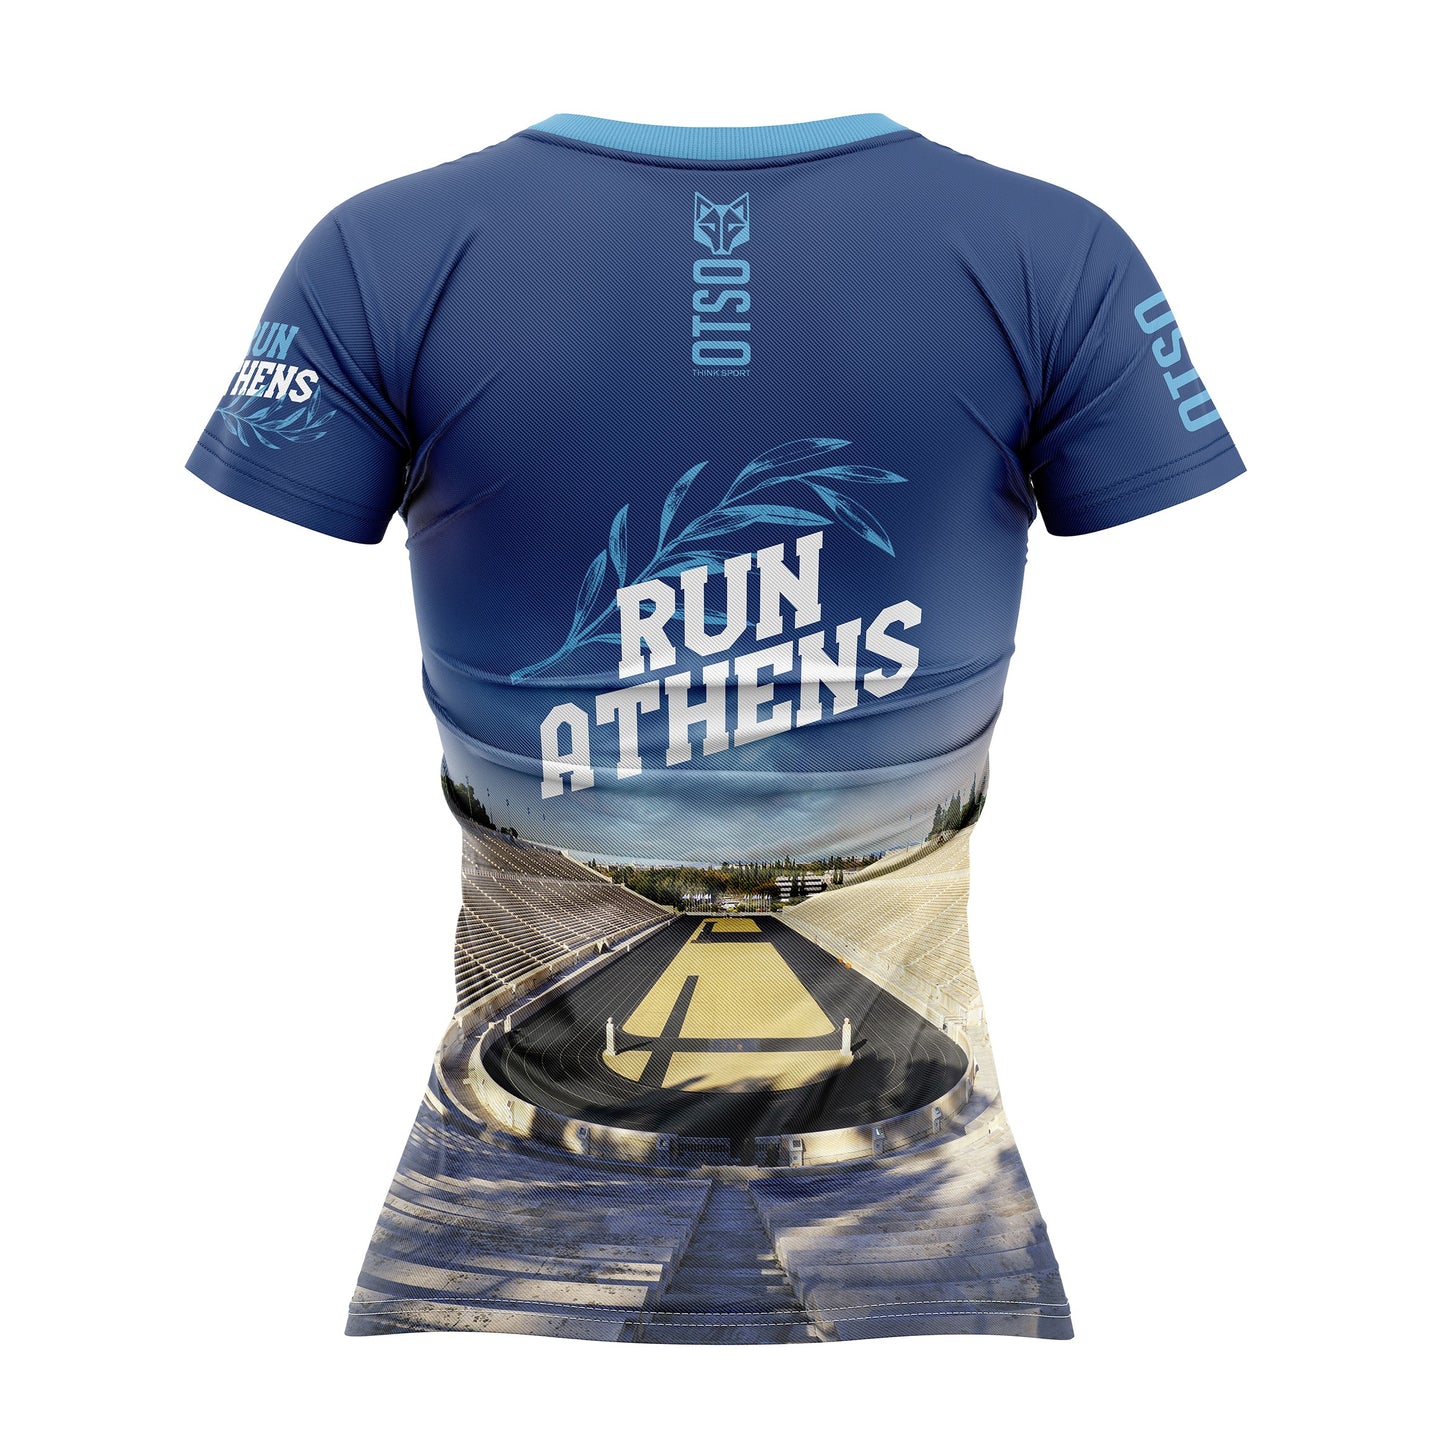 Camiseta manga corta mujer - Run Athens (Outlet)